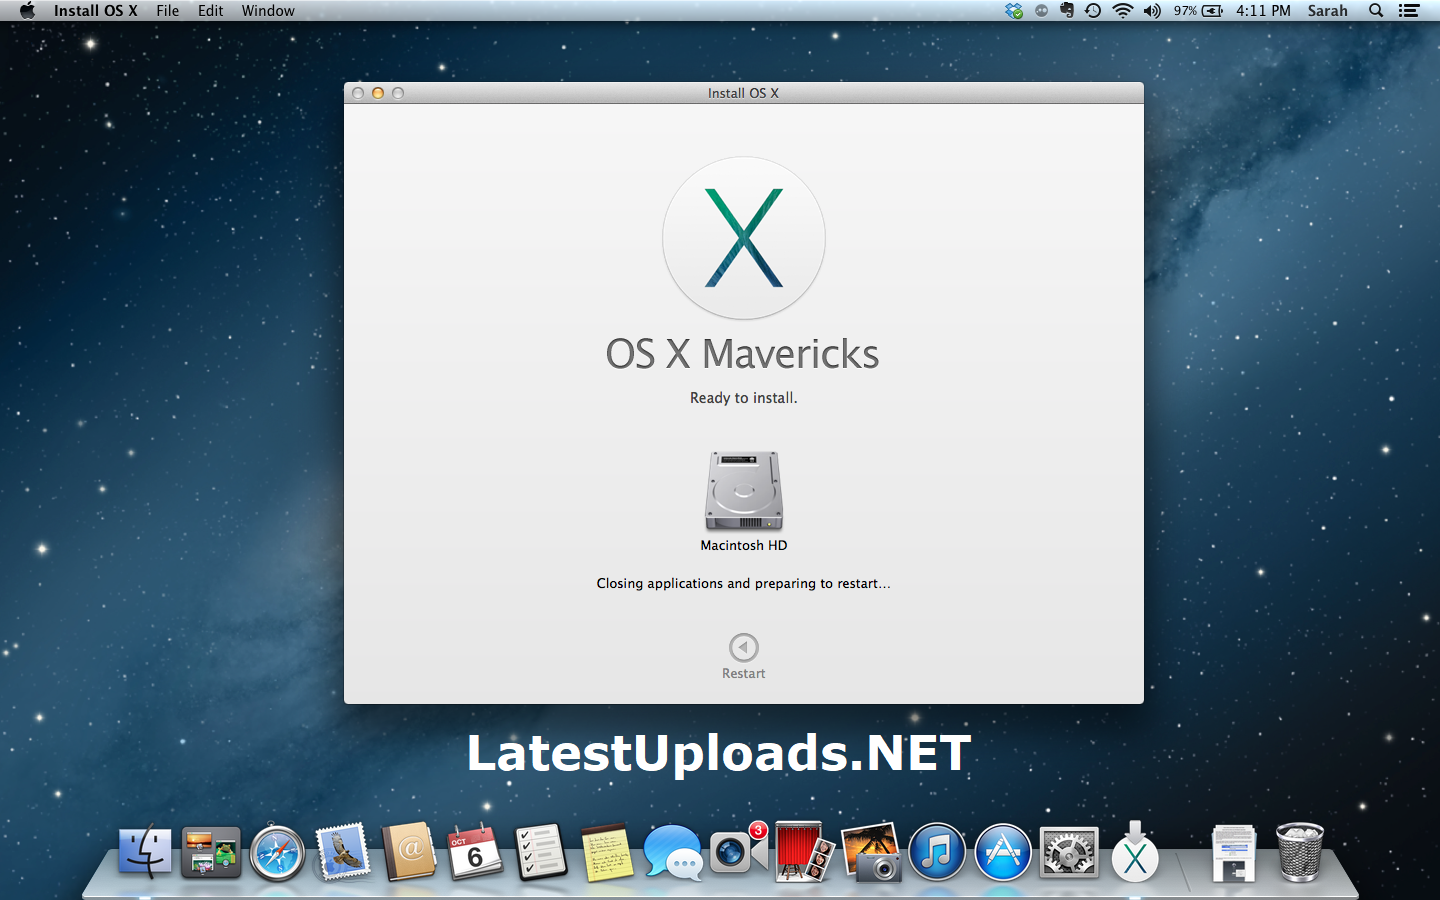 mavericks installer dmg download